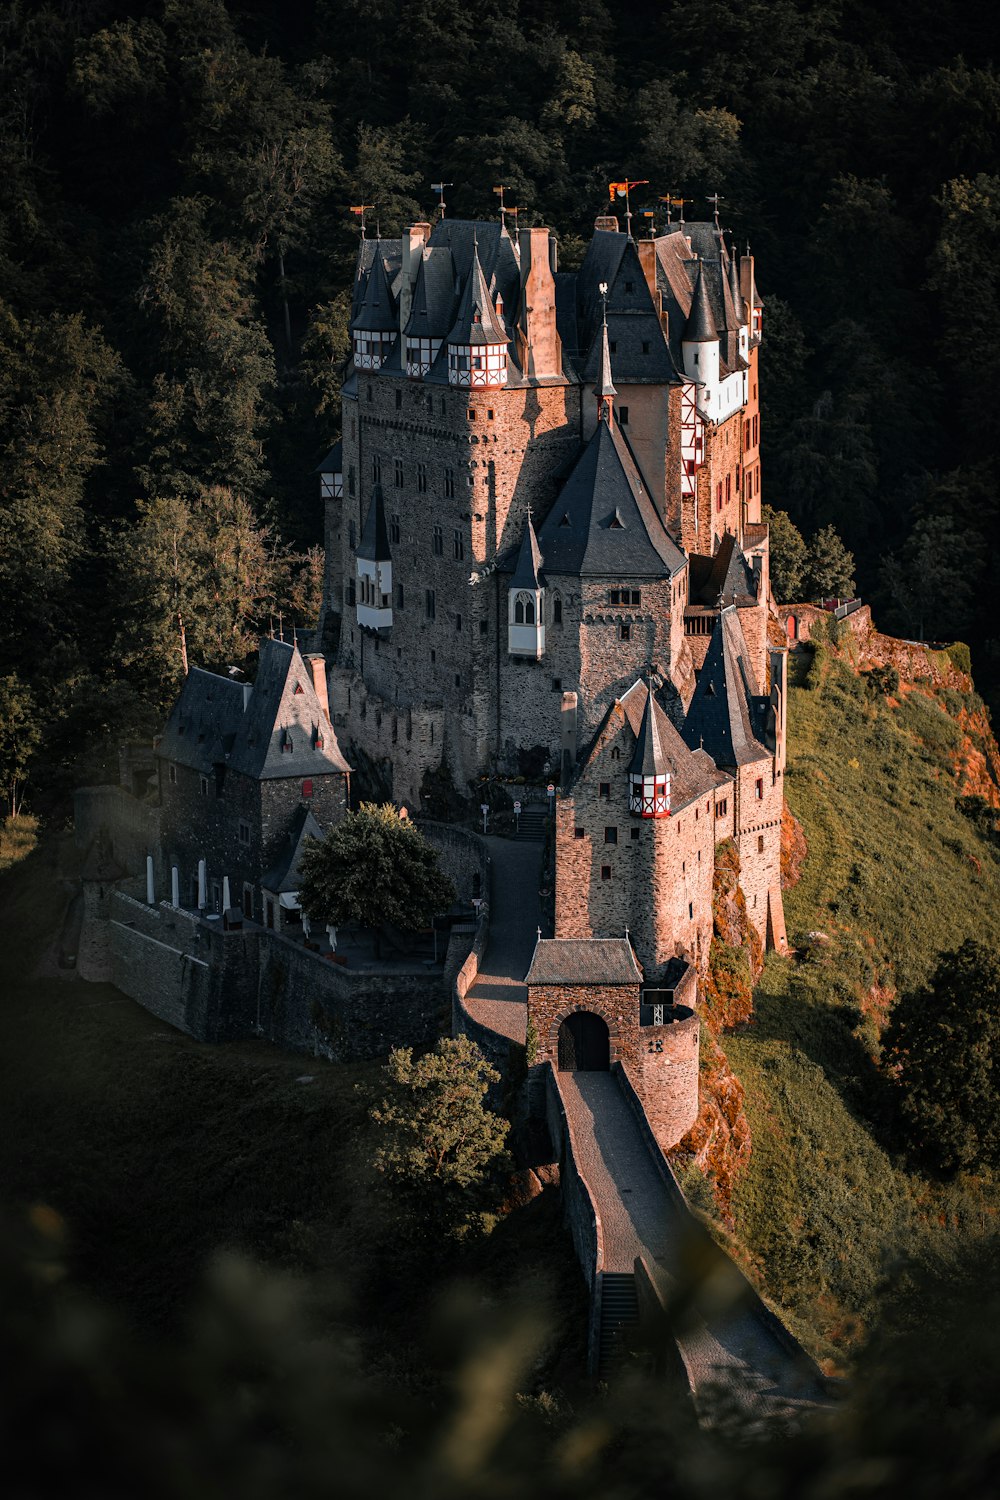 Una vista aérea de un castillo en medio de un bosque